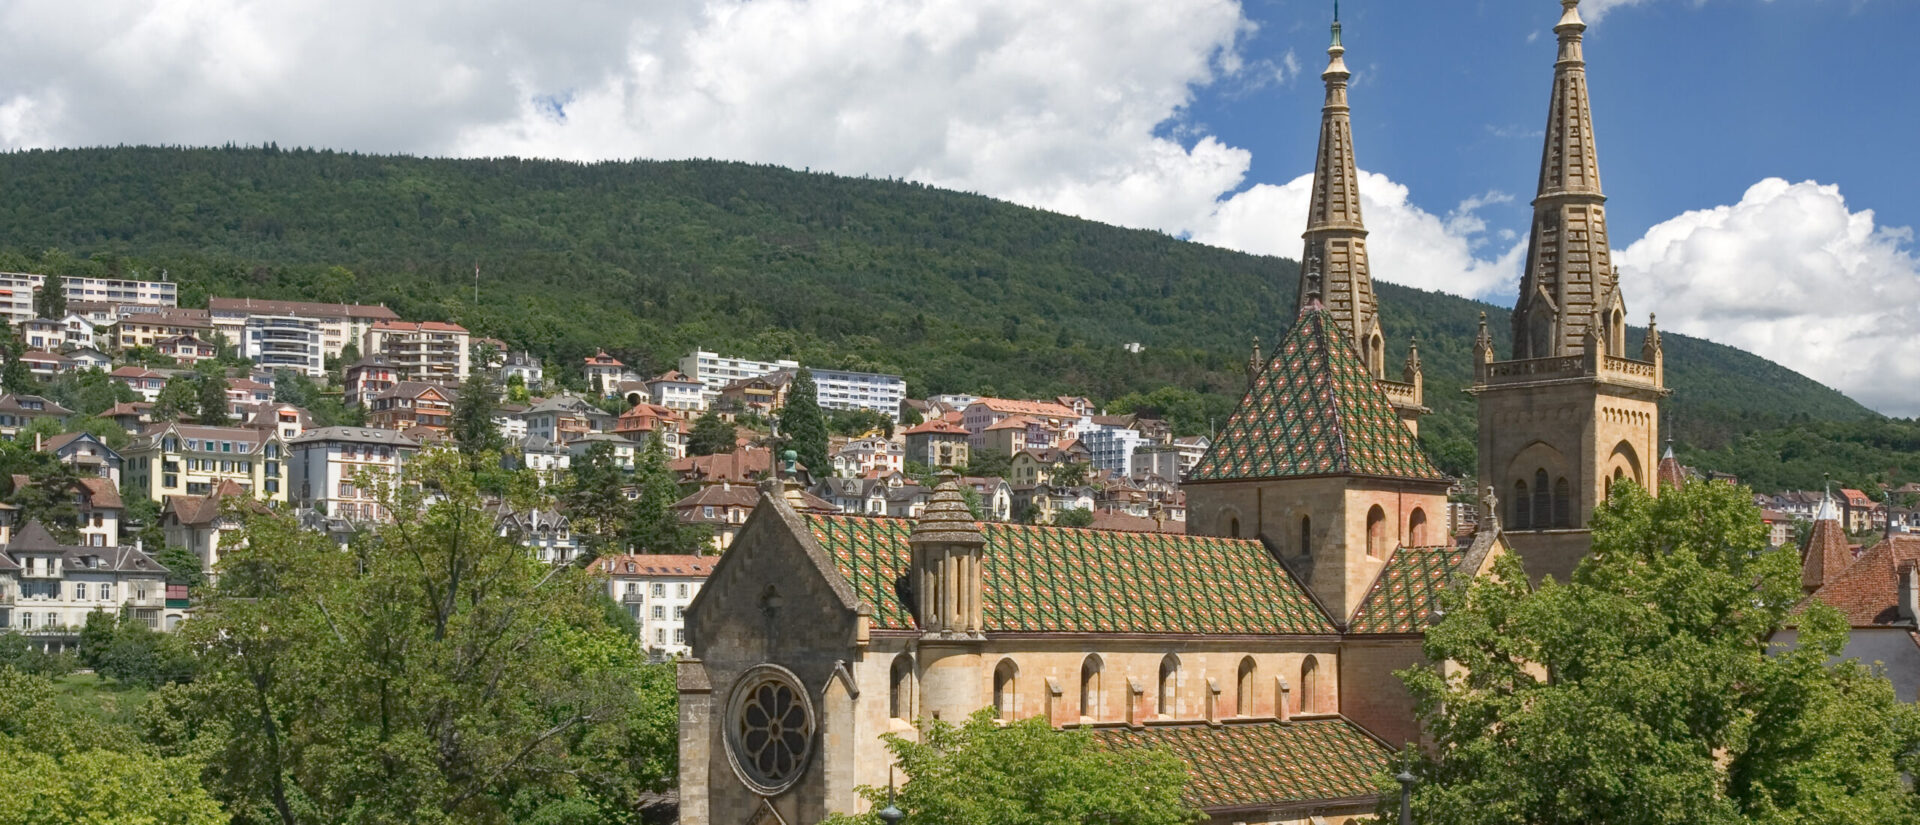 La Collégiale de Neuchâtel est l'une des principales églises réformées de la ville | © Ikiwaner/Wikimedia/CC BY-SA 3.0